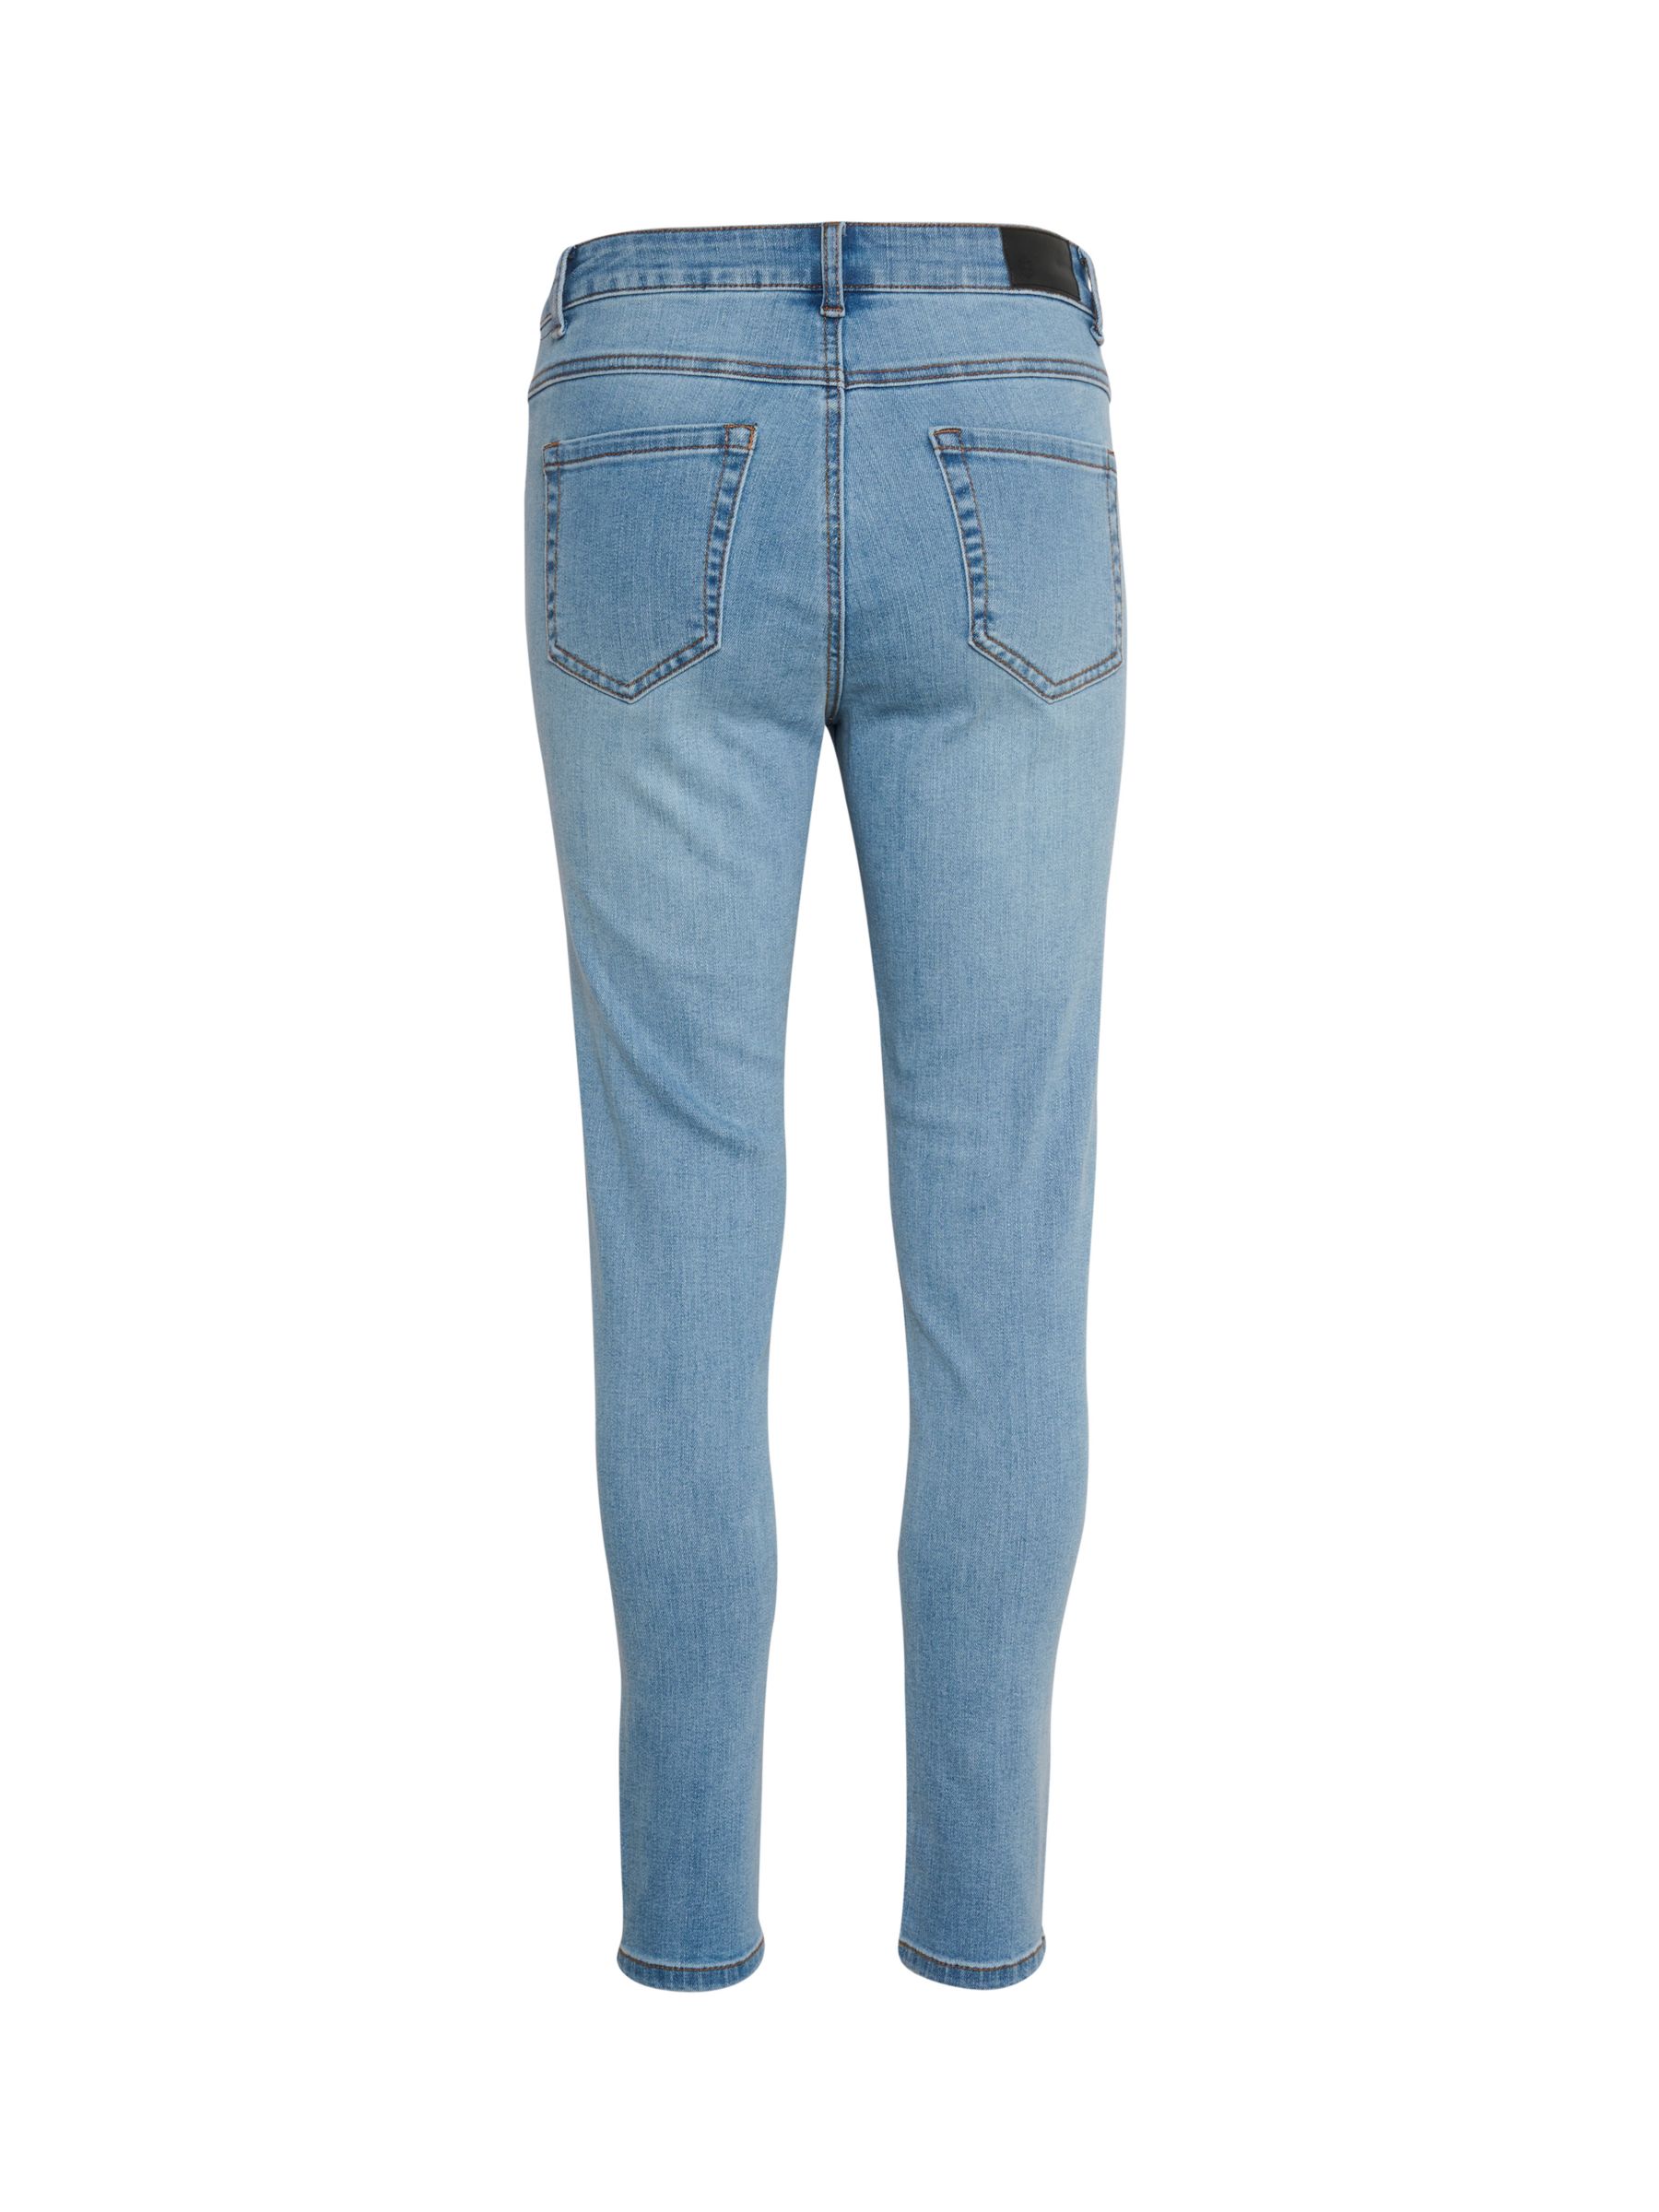 KAFFE Sinem High Waisted Jeans, Blue Washed Denim at John Lewis & Partners